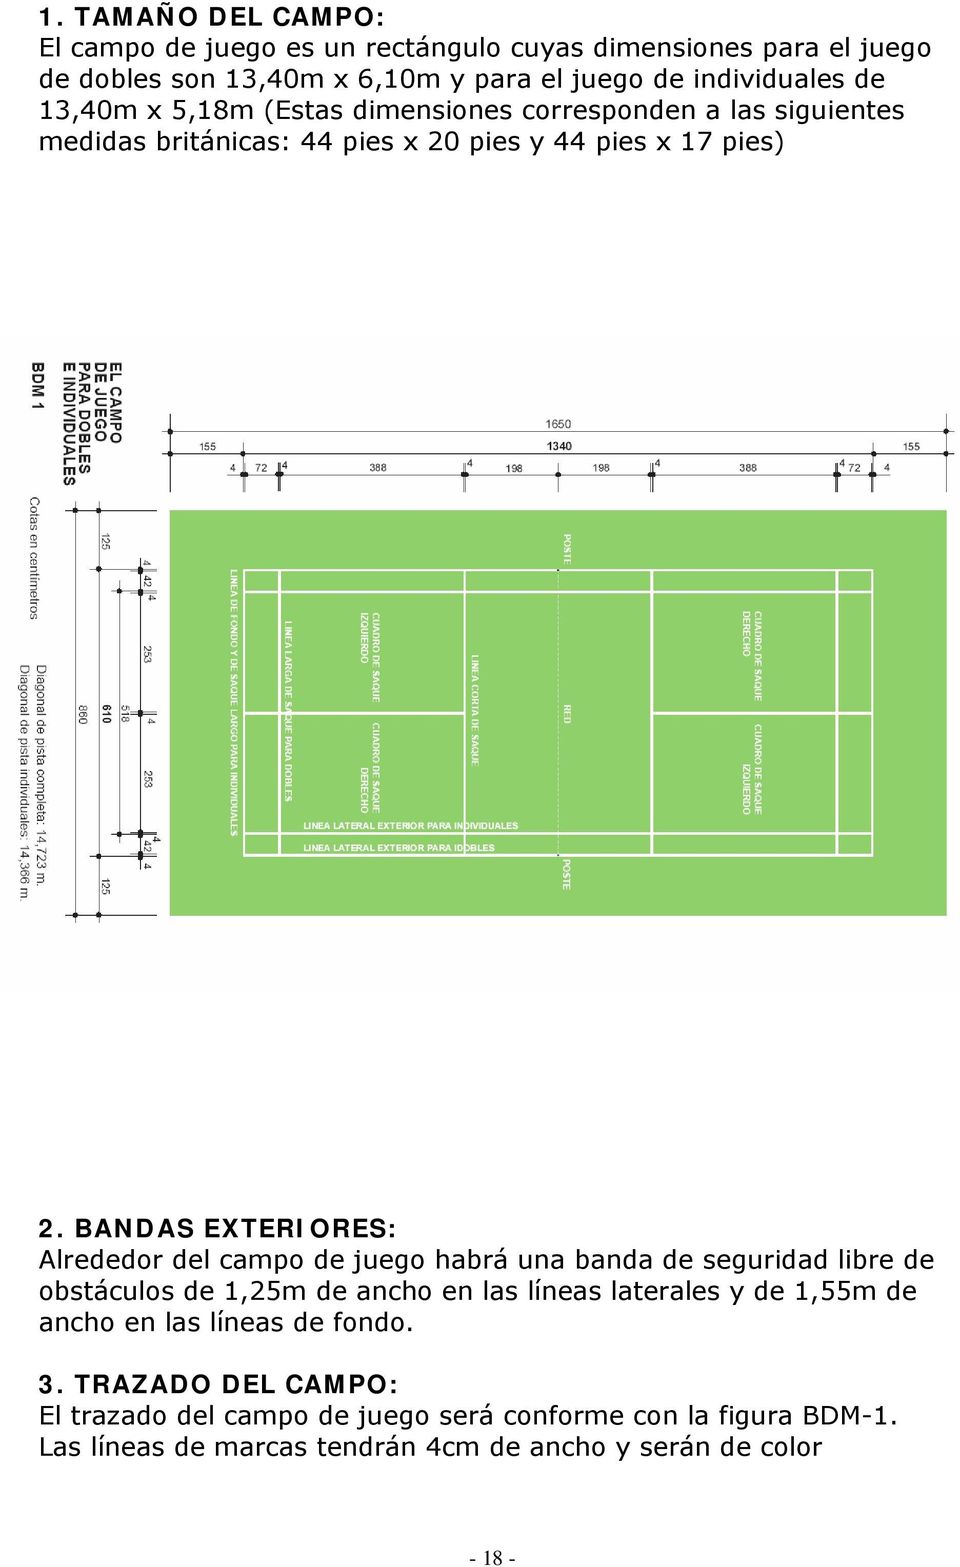 BANDAS EXTERIORES: Alrededor del campo de juego habrá una banda de seguridad libre de obstáculos de 1,25m de ancho en las líneas laterales y de 1,55m de